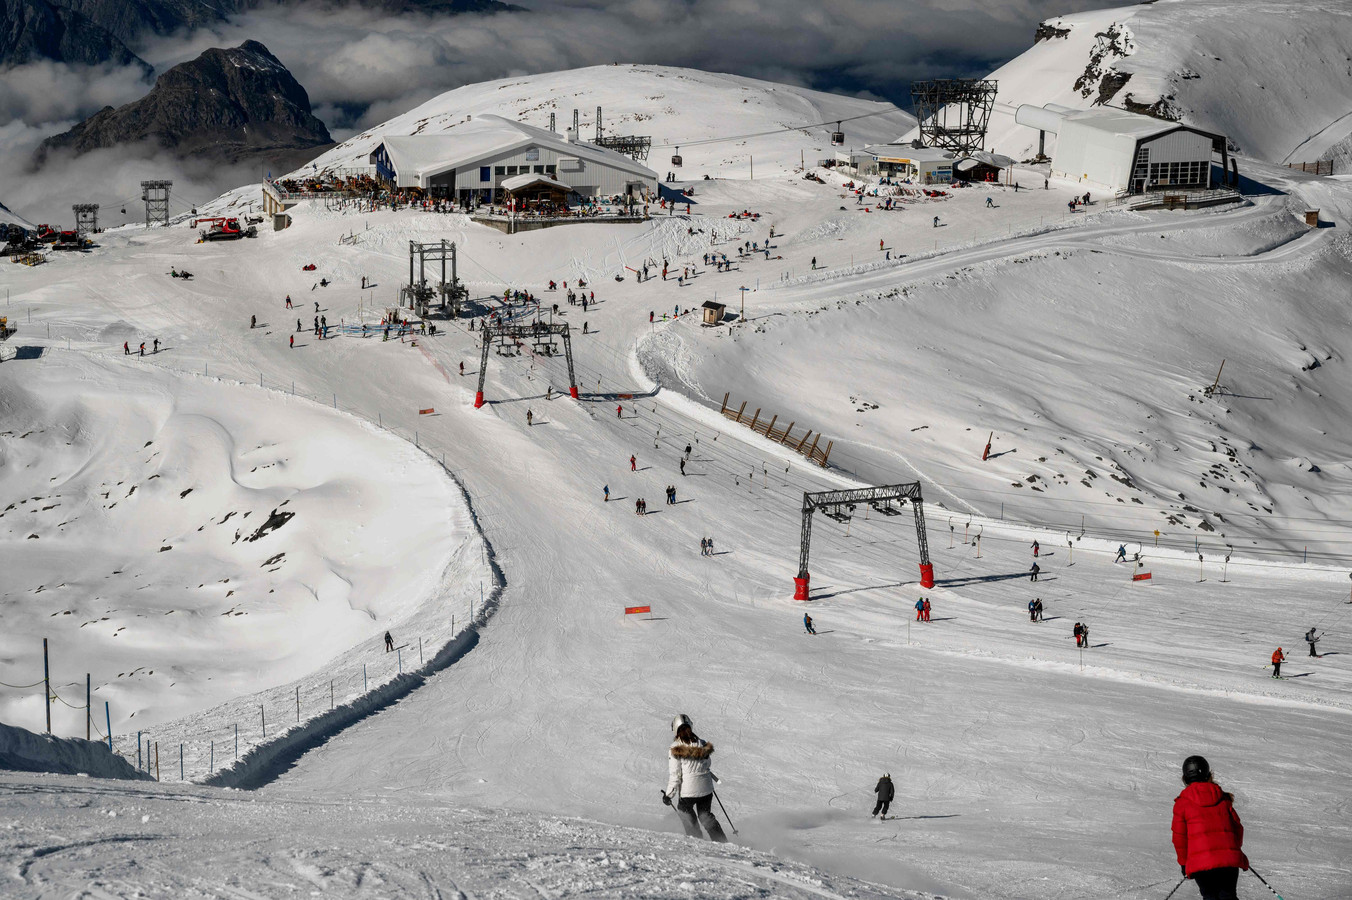 Zonder boosterprik kun je vanaf 15 januari in Frankrijk alleen met een negatieve test naar de skipistes, zoals hier in skigebied Les Deux Alpes.